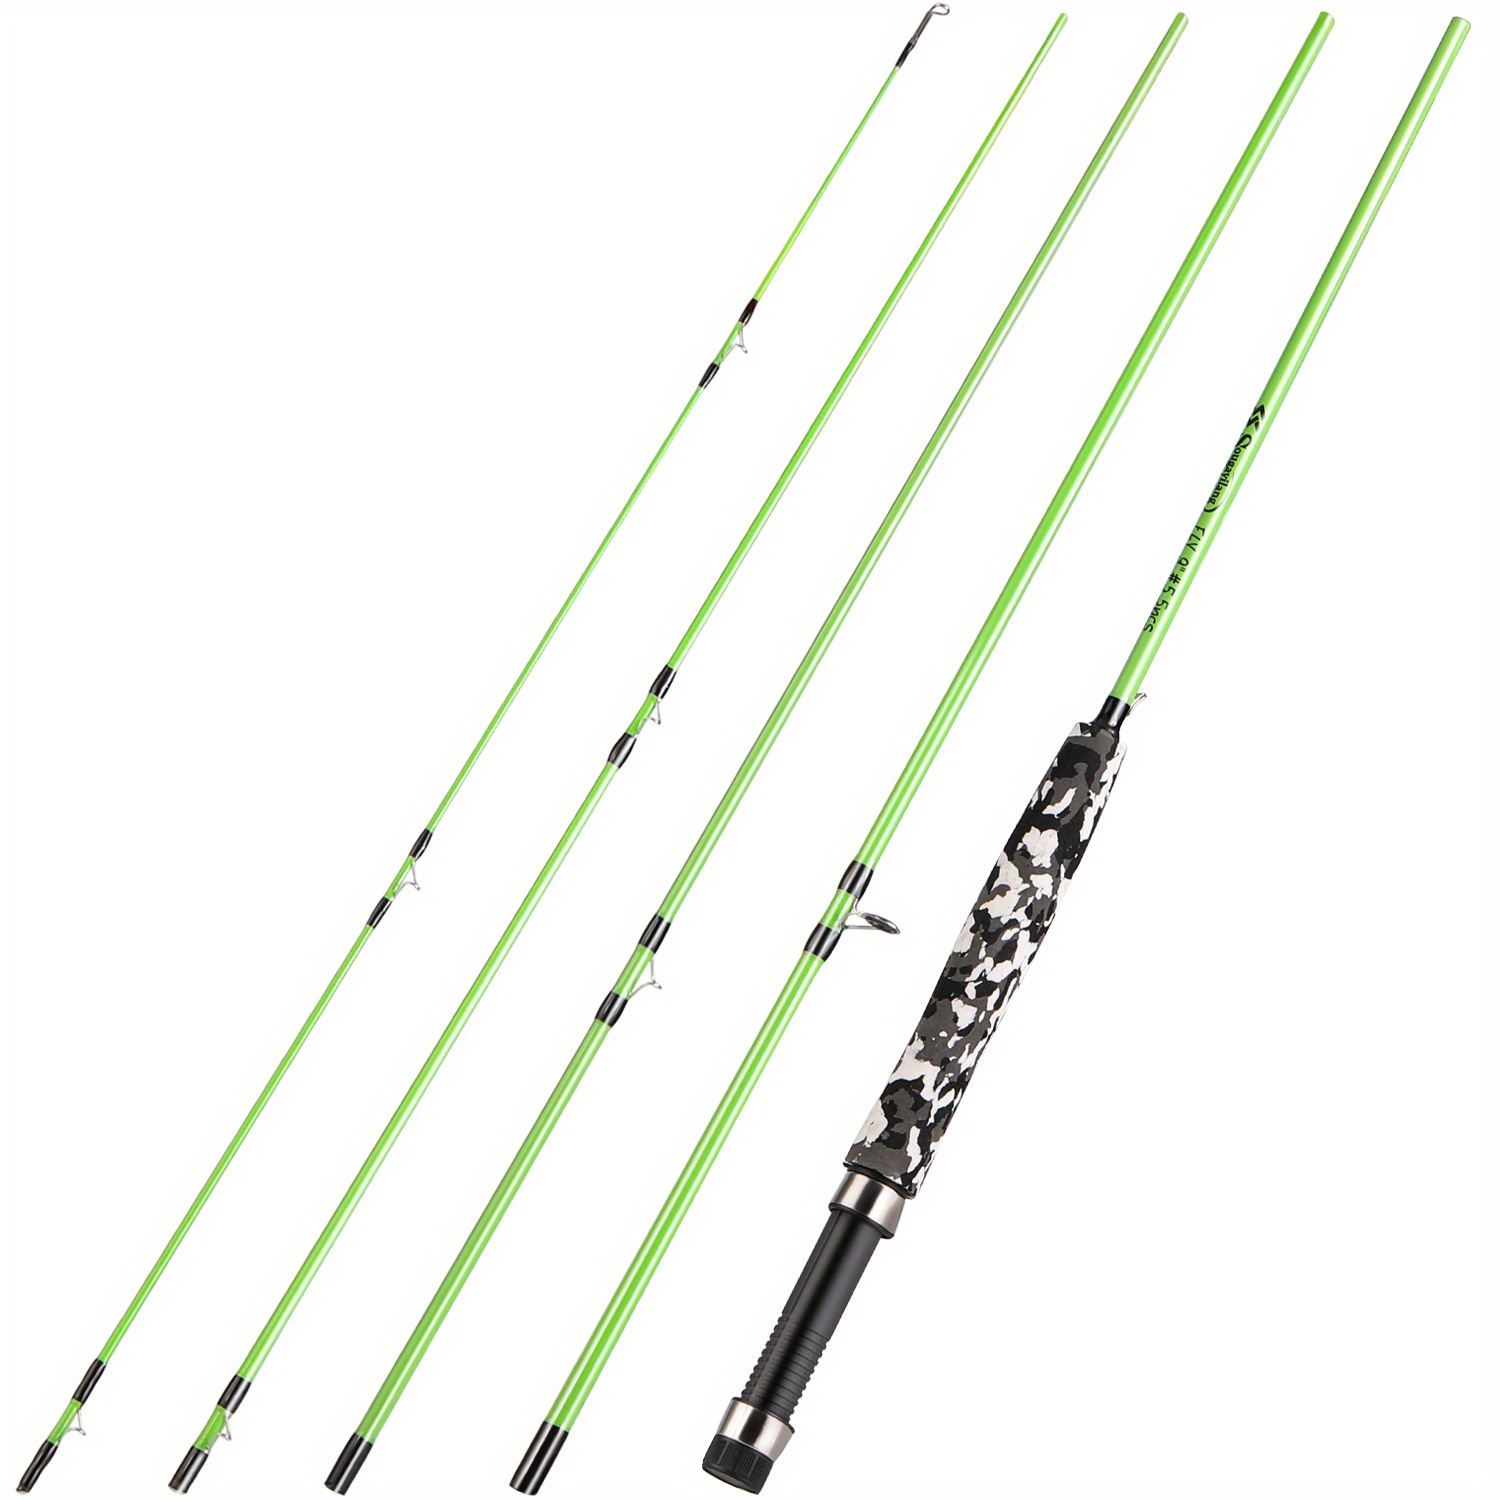 Carbon Fiber Fishing Rod Set 7m/9ft 5 6WT, Reel, Tackle Bag